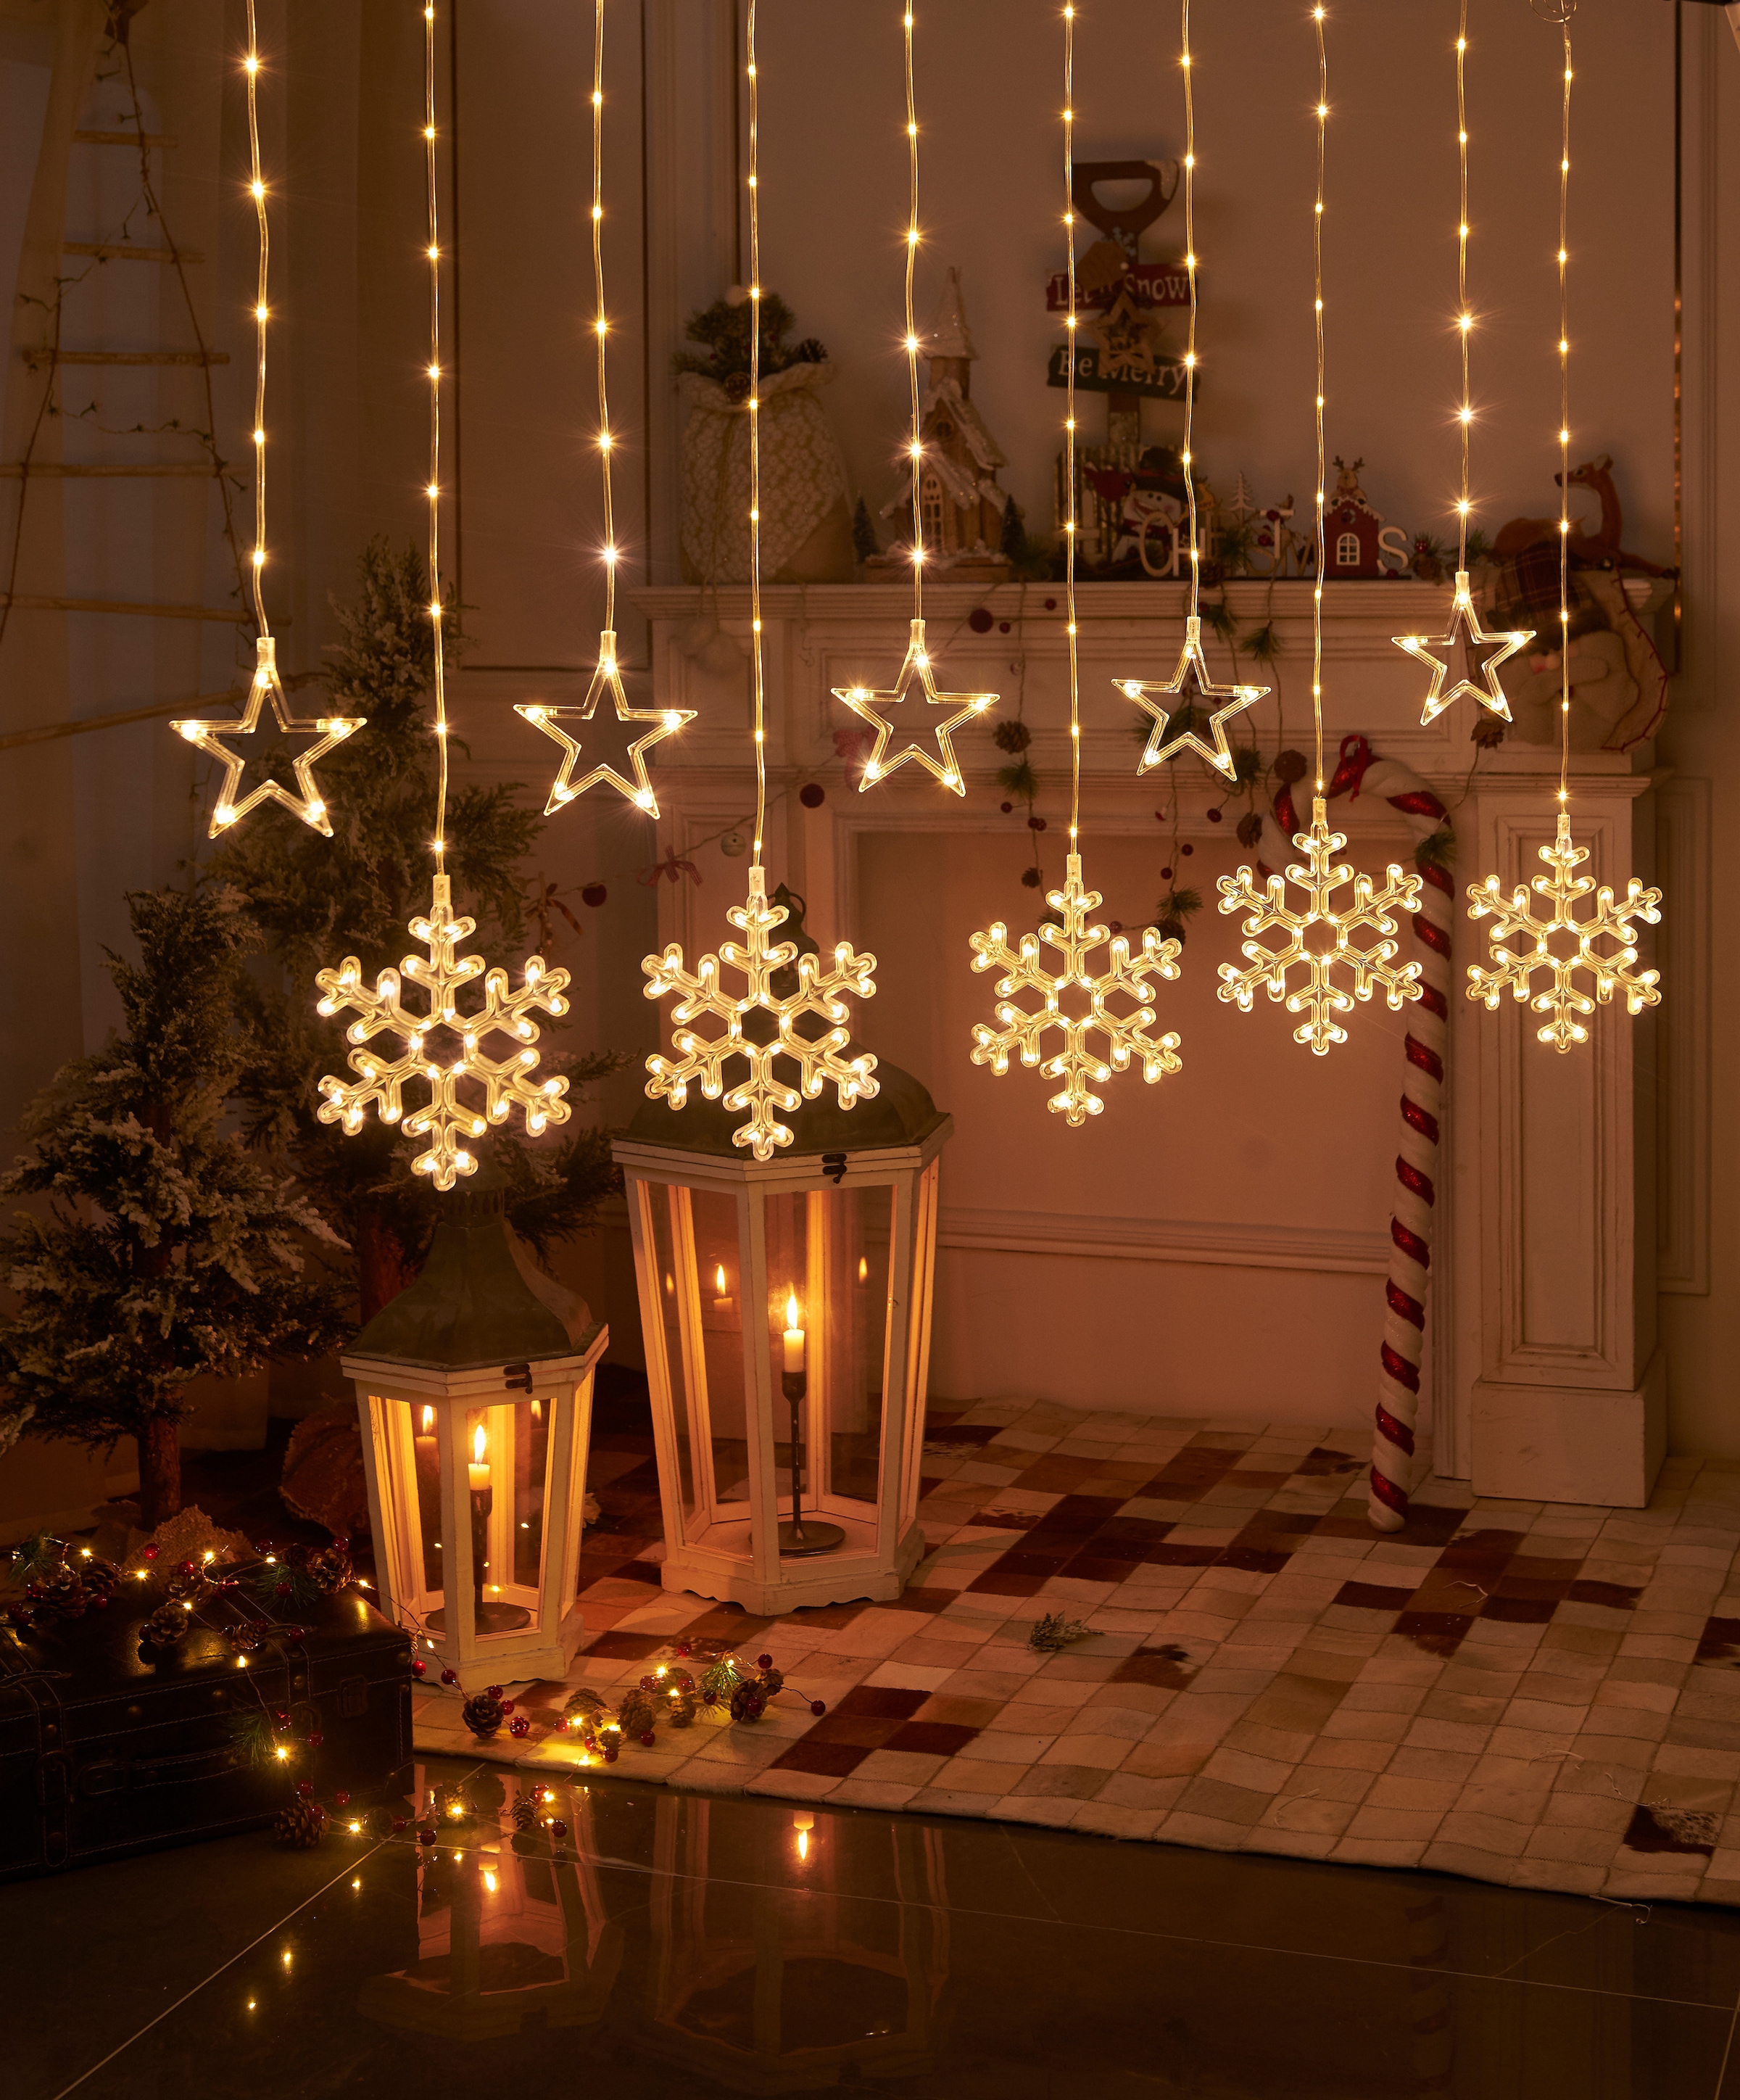 Star-Max LED-Lichtervorhang »Weihnachtsdeko aussen«, 200 St.-flammig, mit Sternen und Schneeflocken Motiven, 200 LEDs, In- und Outdoor